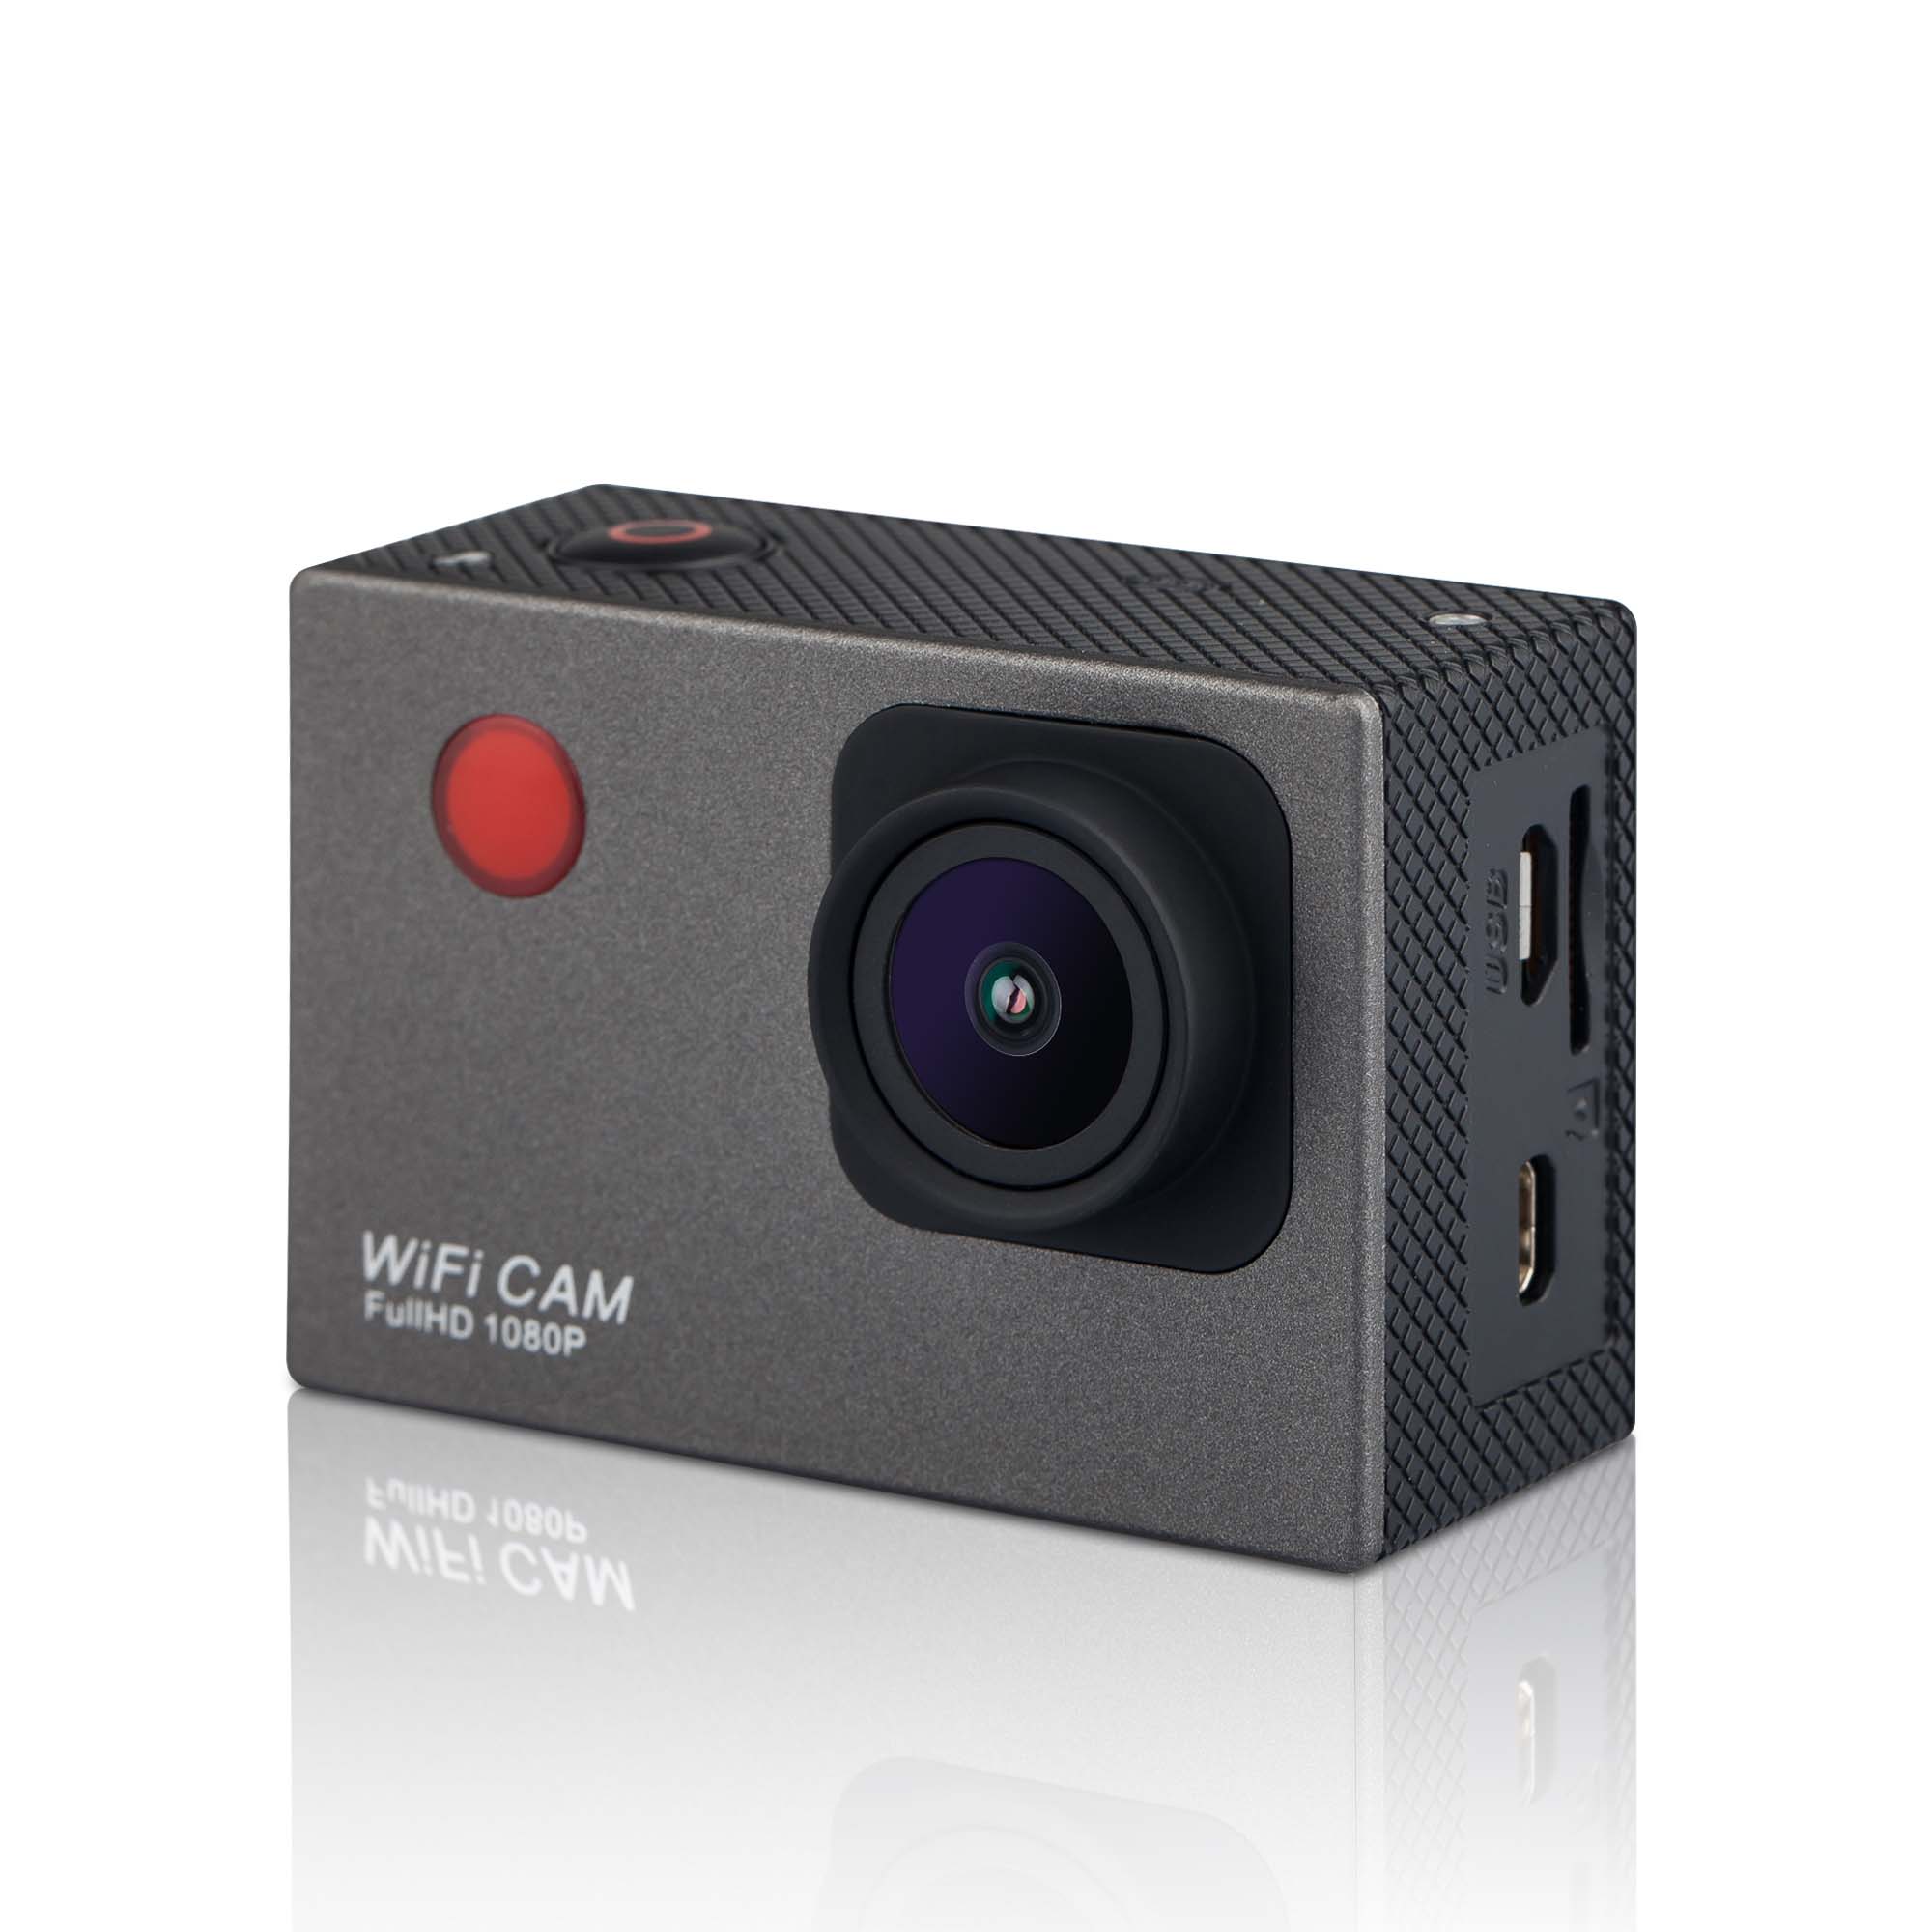 2.0英寸WIFI运动相机,1200万像素照片,1080P高清视频,带无线遥控功能